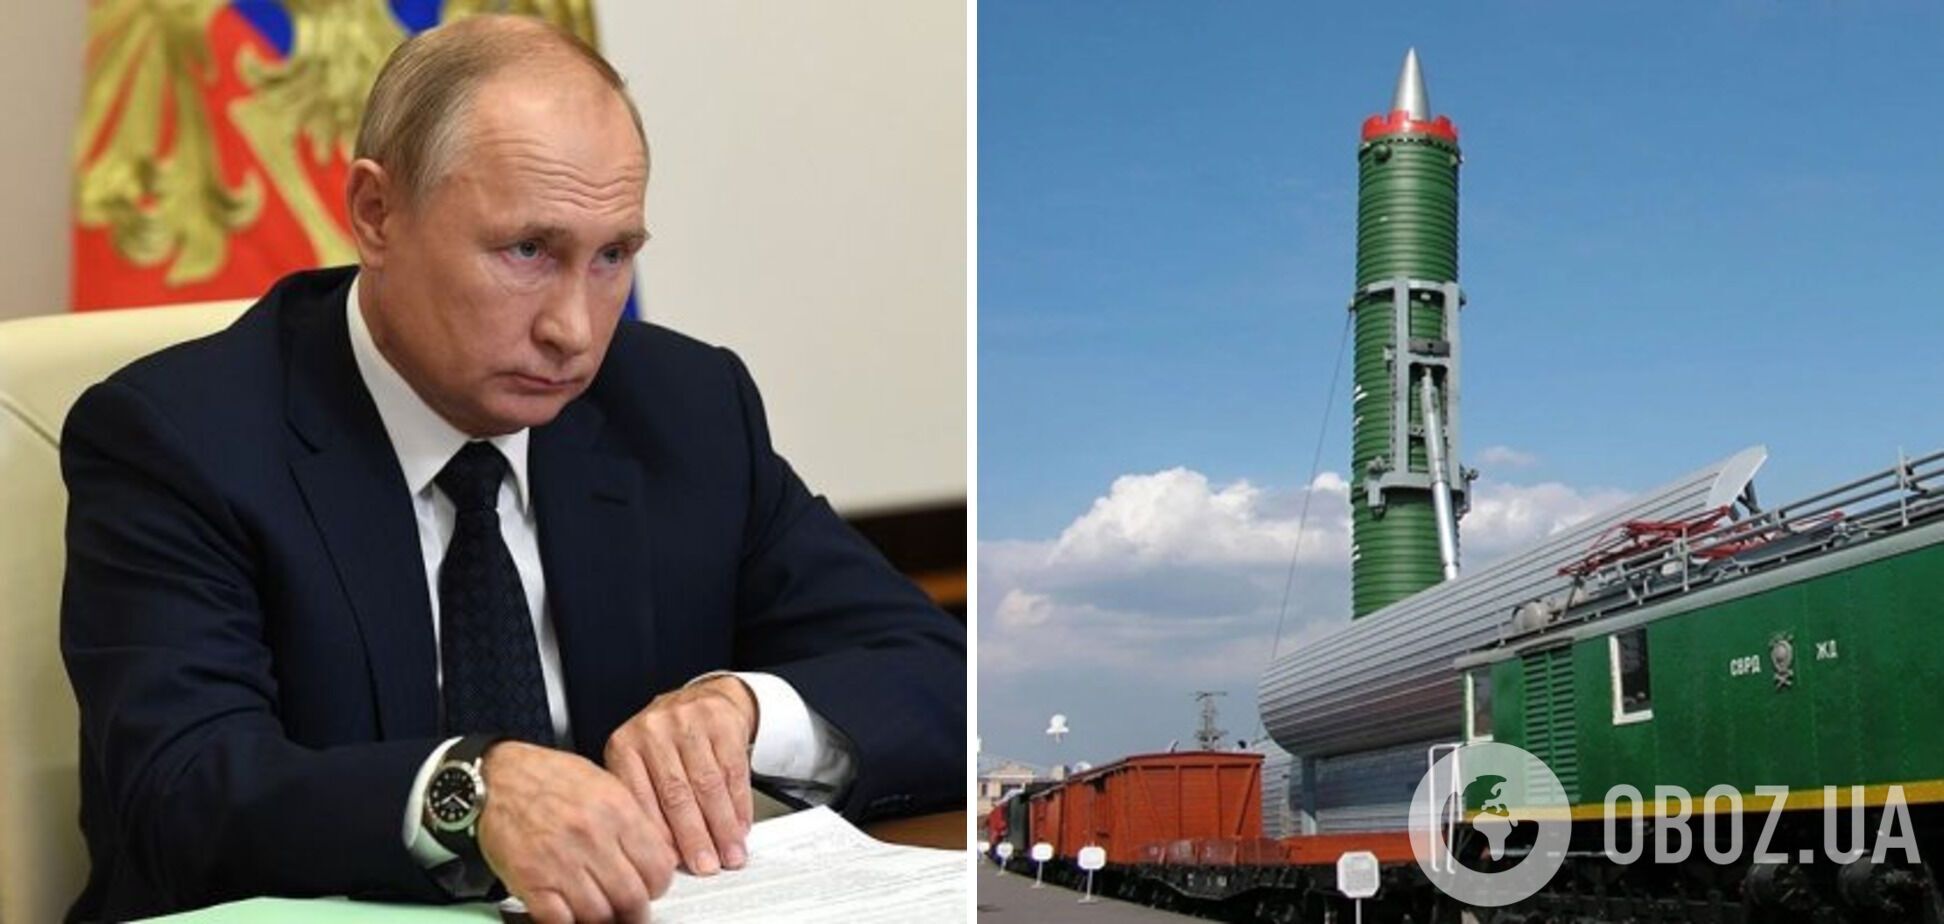 Путин пытается манипулировать Западом с помощью ядерных угроз